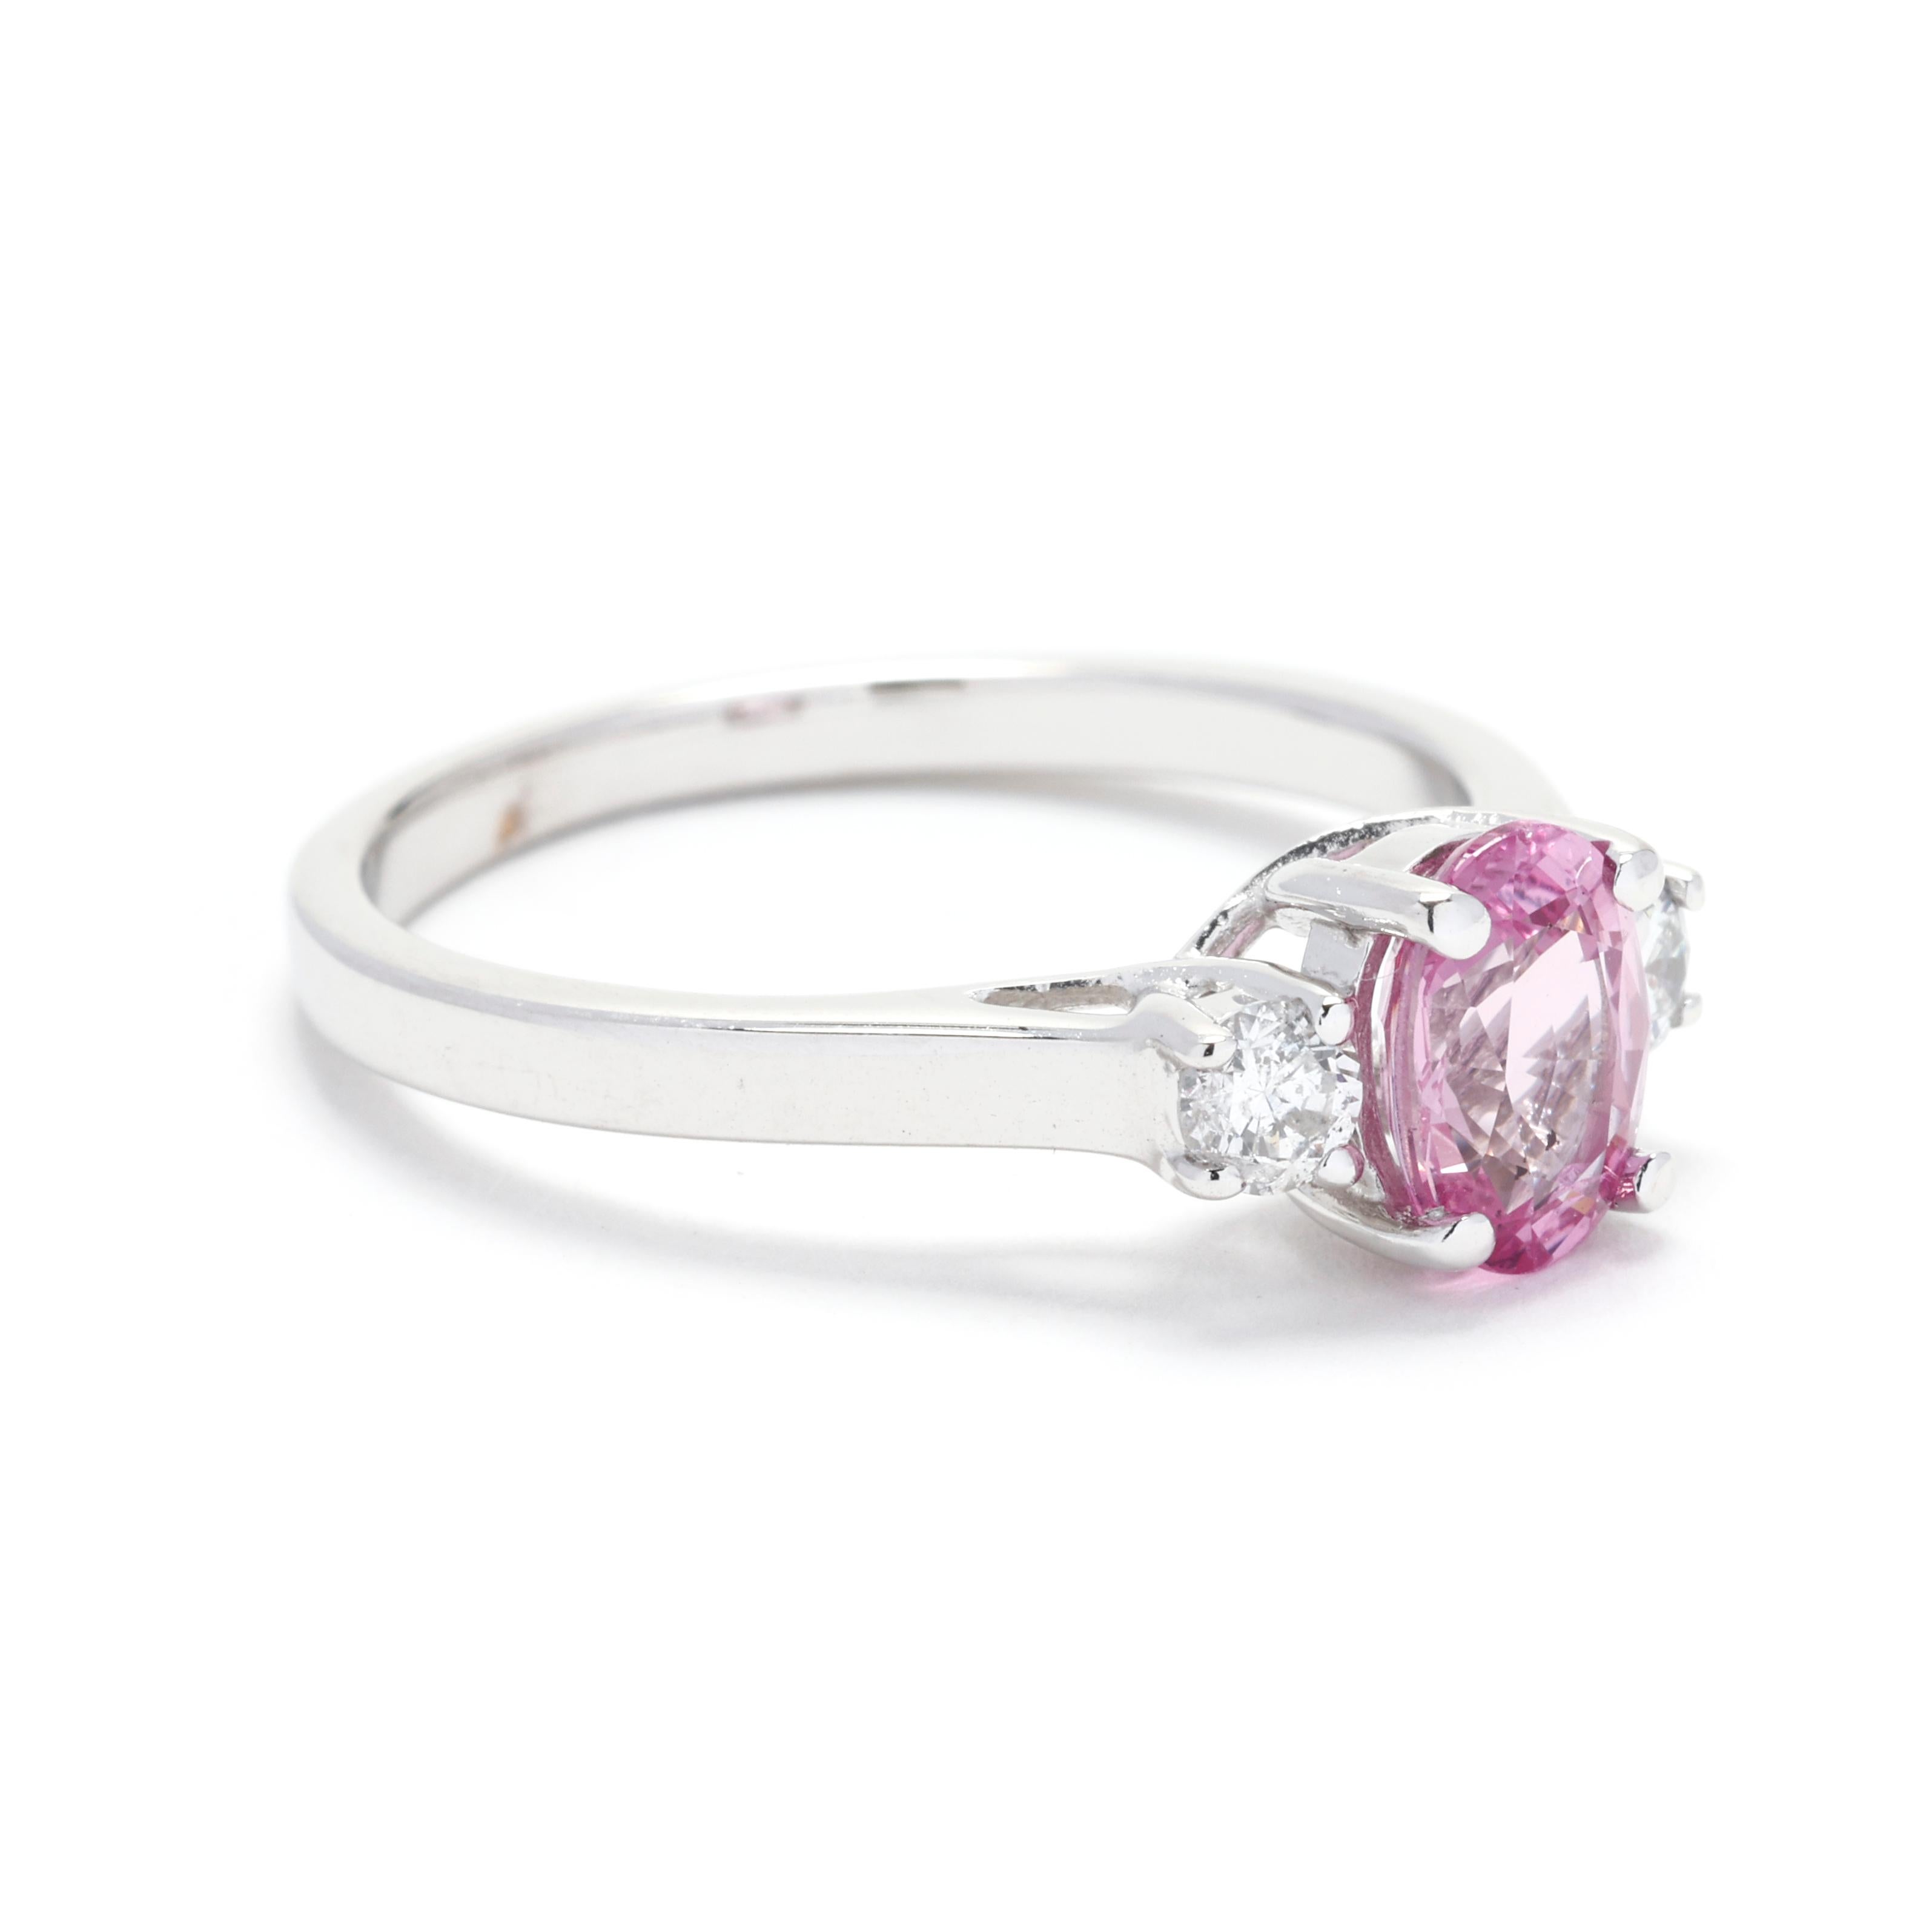 Faites-vous remarquer avec cette exquise bague à 3 pierres de 1,36ctw en diamant et saphir rose. Fabriquée avec soin en or blanc 14k, cette magnifique bague présente un trio d'éblouissants diamants ronds de taille brillant, rehaussés de saphirs